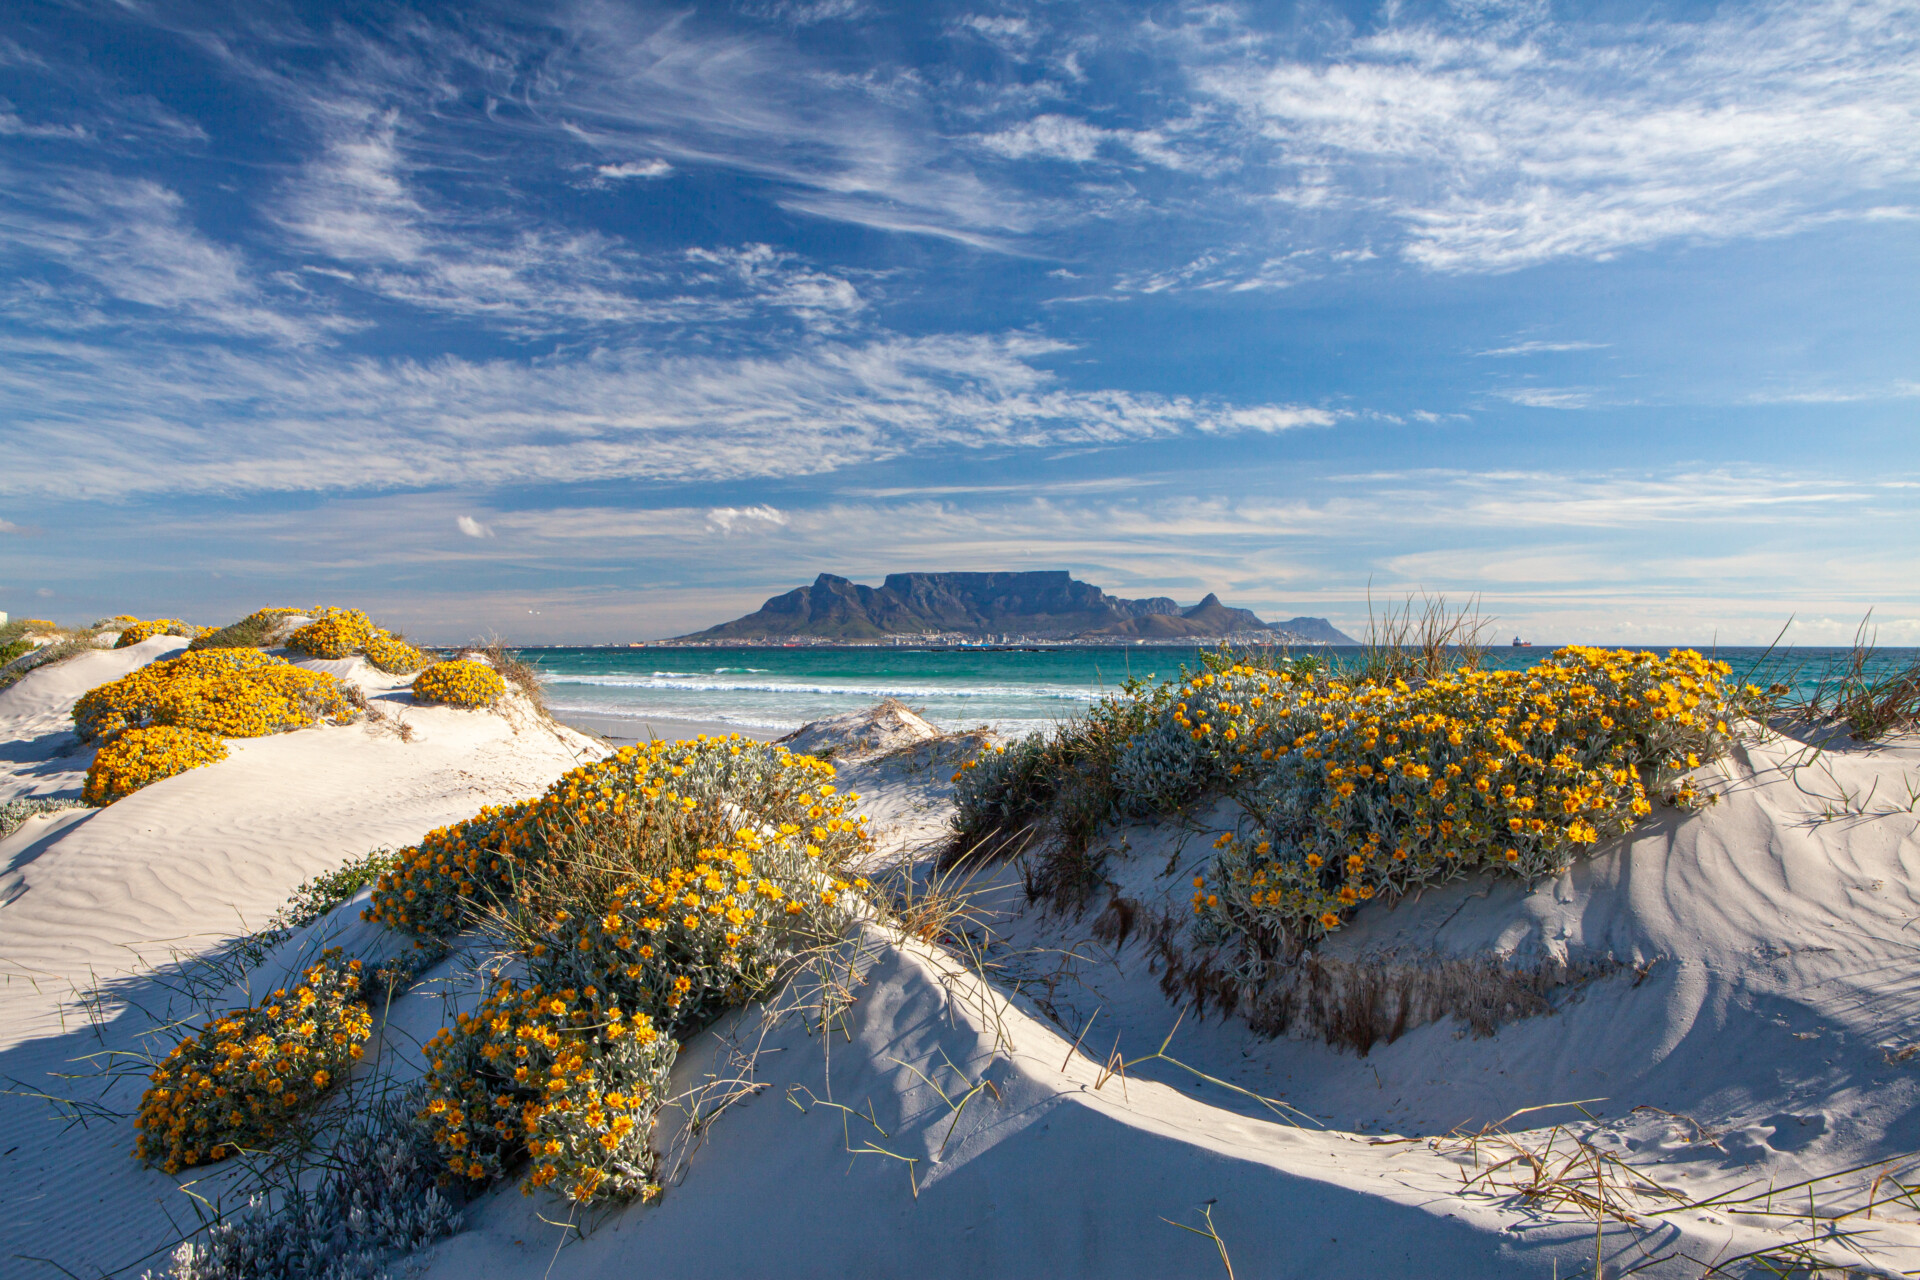 Blick auf einen malerischen Strand mit weißen Sanddünen, die mit gelben Blumen übersät sind, im Vordergrund, mit einem klaren Blick auf einen markanten Tafelberg über dem azurblauen Meer im Hintergrund unter einem überwiegend blauen Himmel mit vereinzelten Wolken.